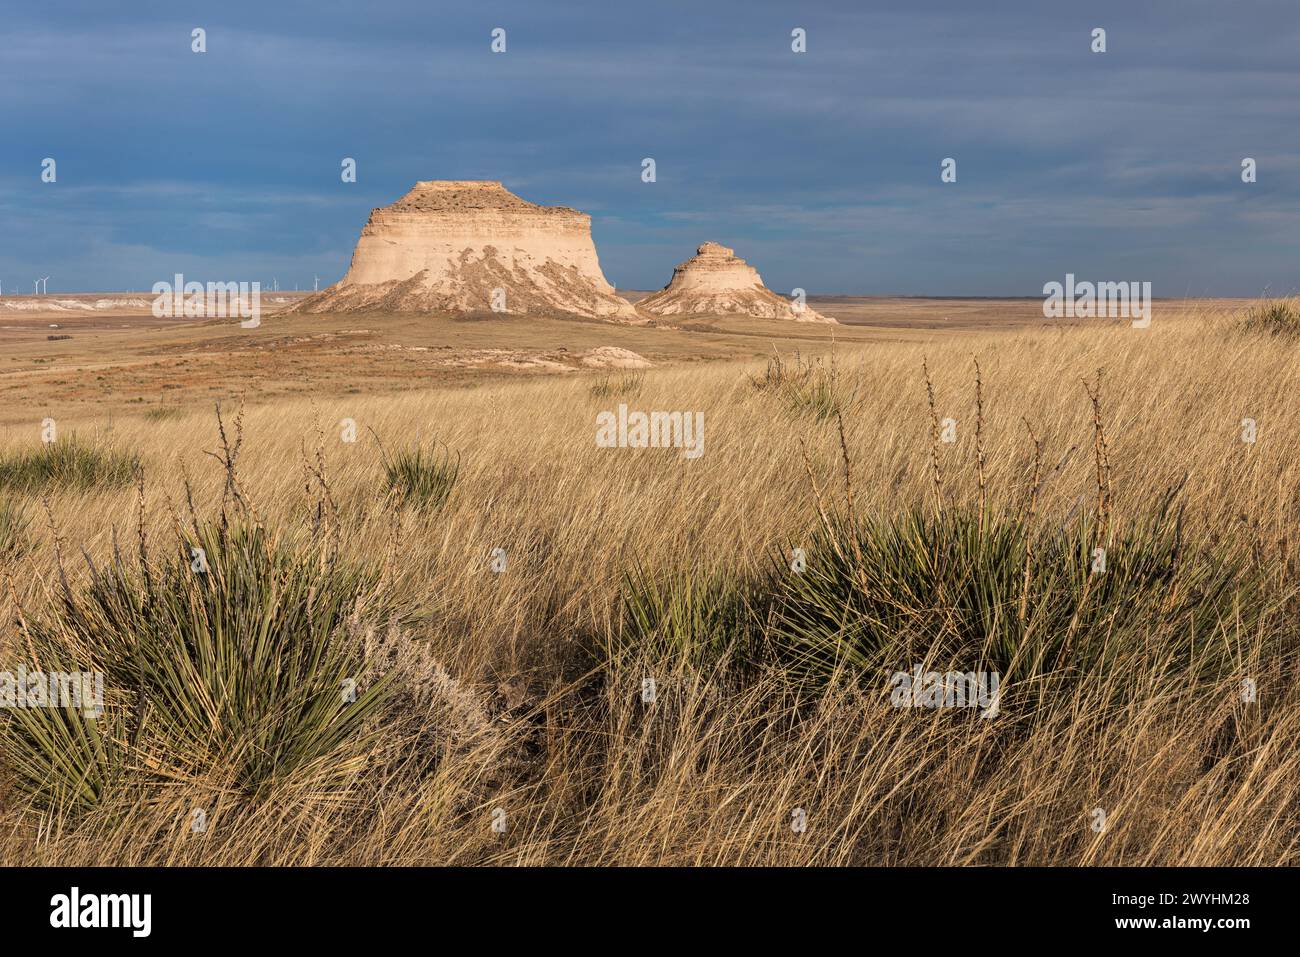 Le Pawnee Buttes, che si innalzano a 300 metri sopra la prateria di Pawnee, sono punti di riferimento geologici erosi nel nord-est del Colorado. Foto Stock